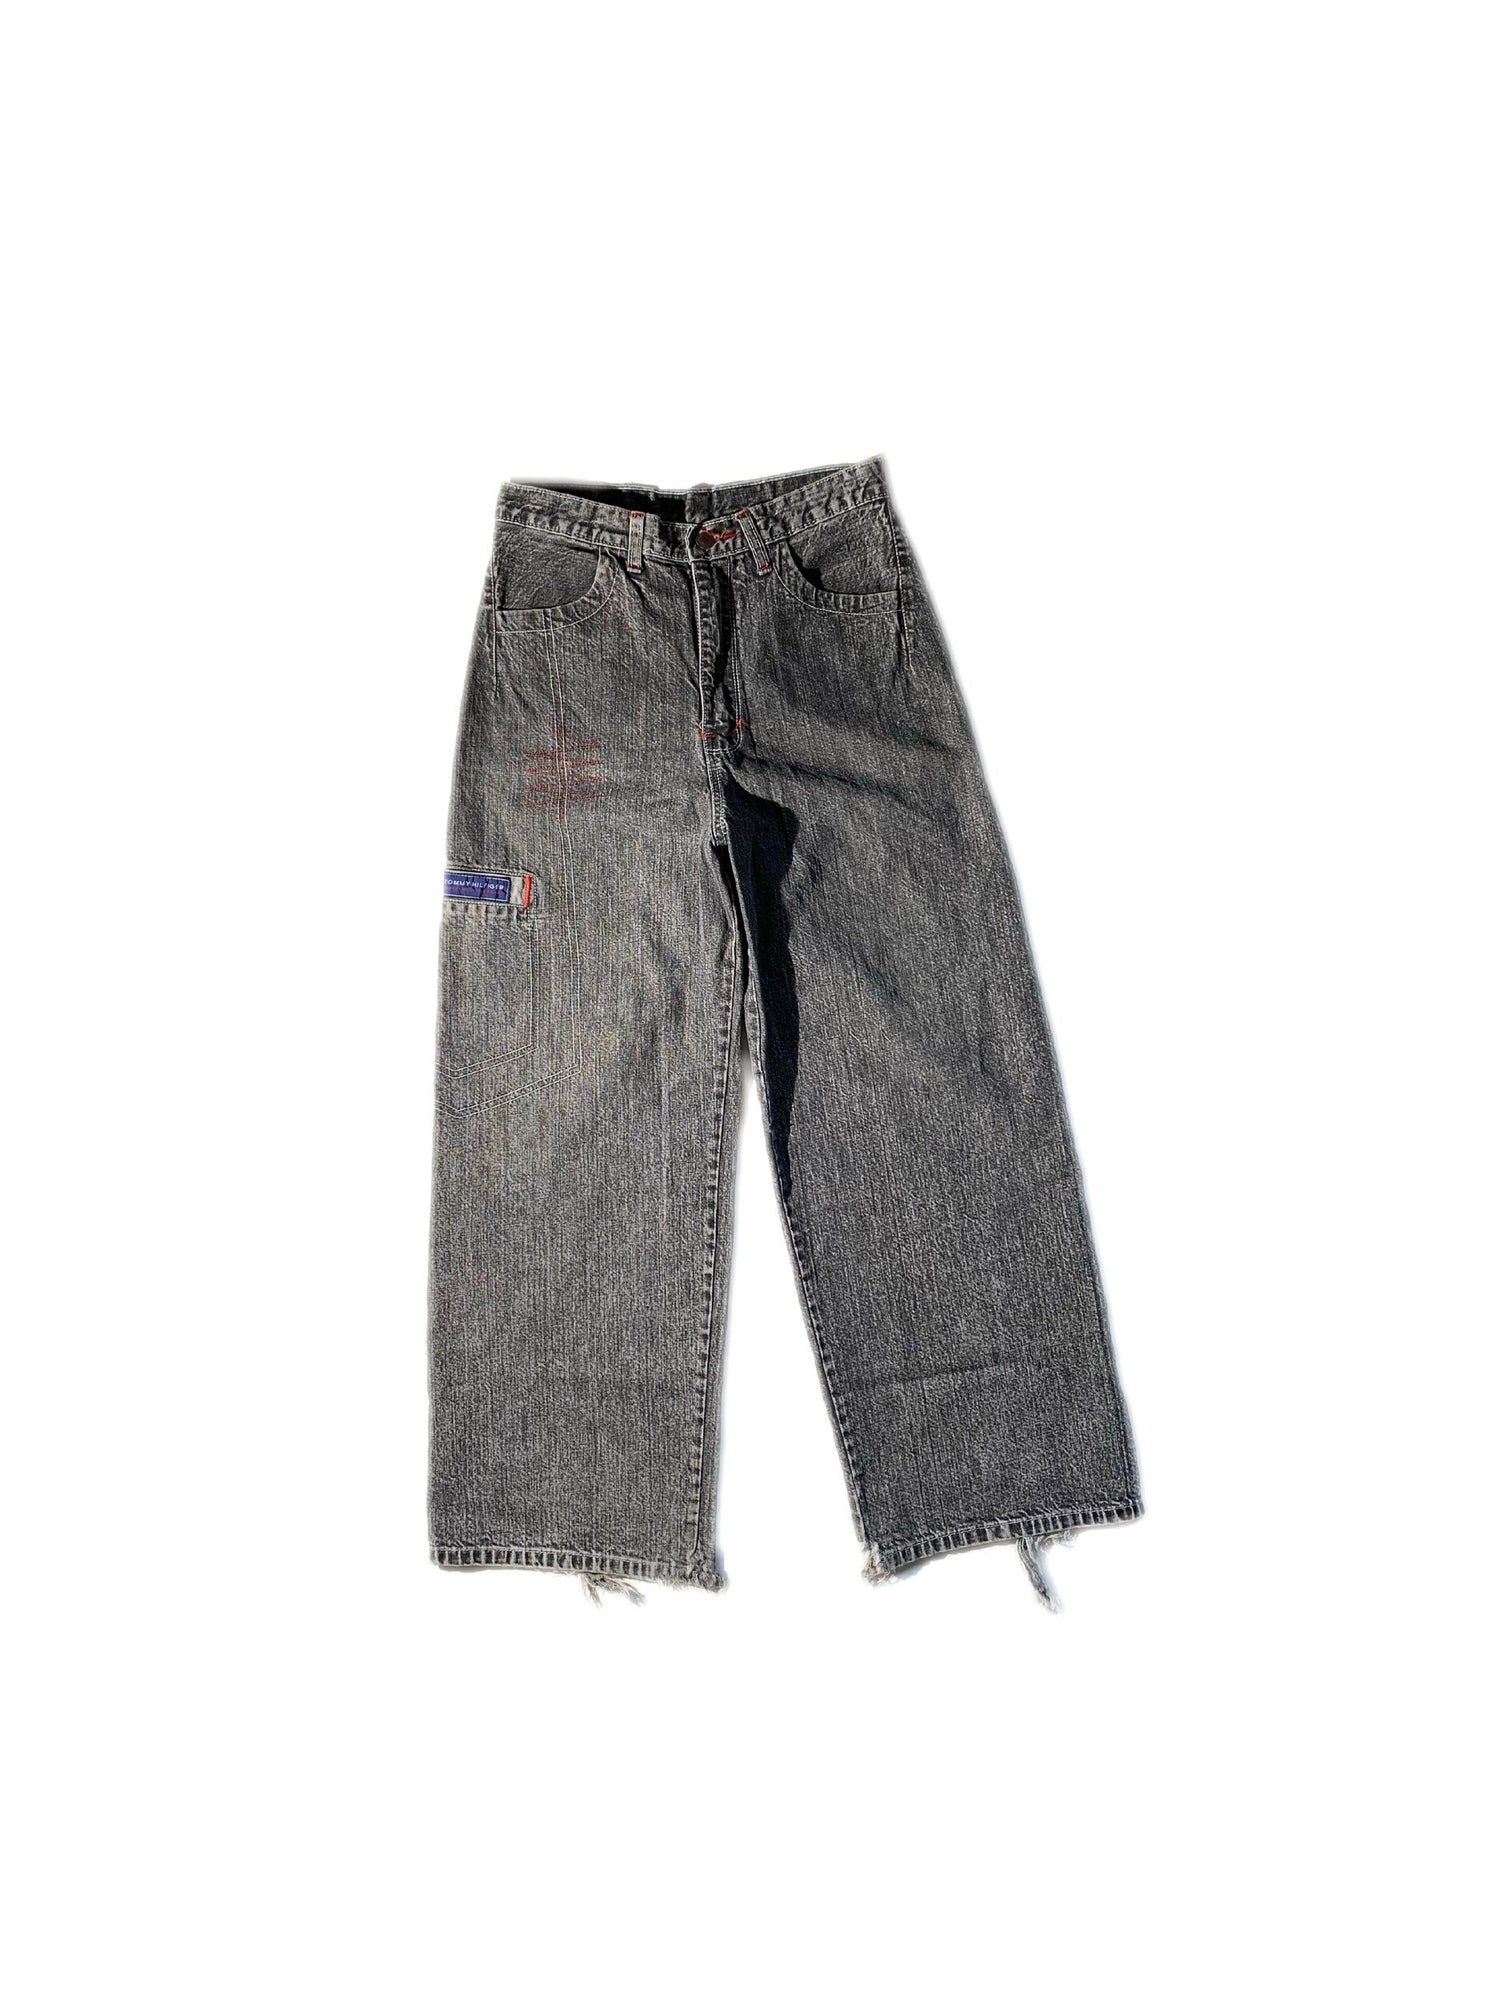 Vintage Dark Wash Tommy Hilfiger Jeans – Glorydays Fine Goods